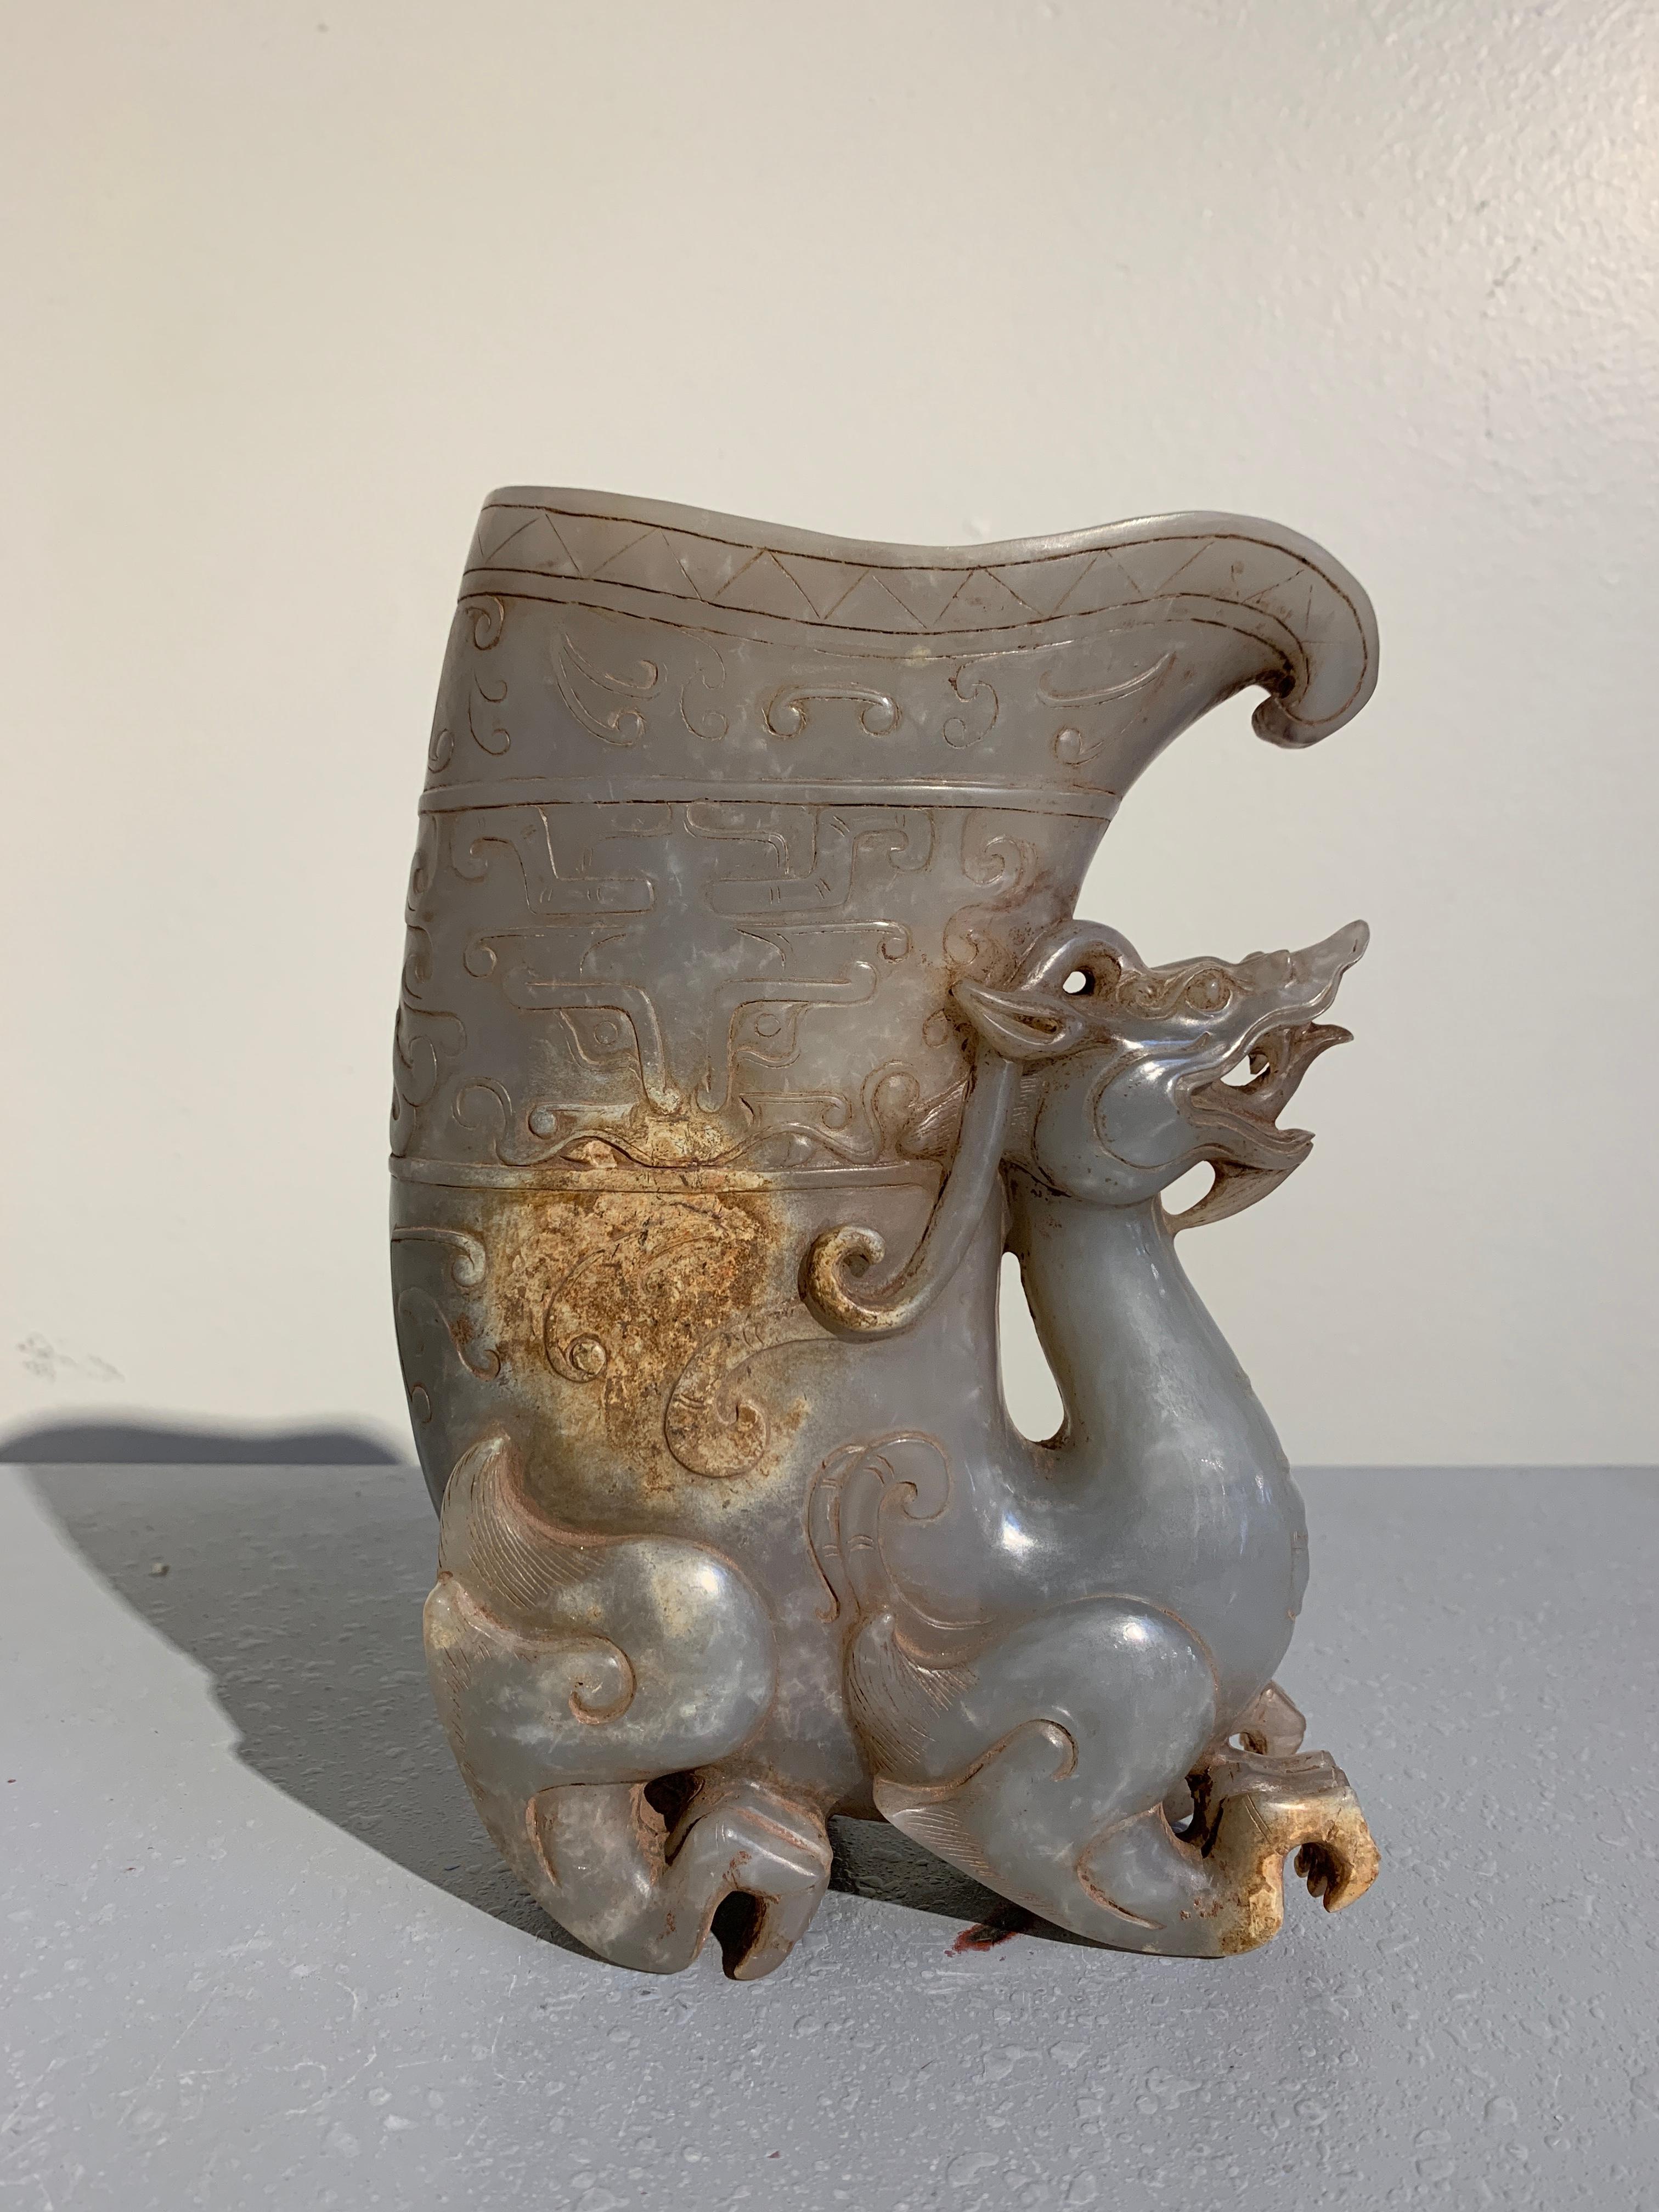 Récipient à boire en pierre dure sculpté datant de la période de la République chinoise du début du 20e siècle, appelé rhyton, sous la forme d'un pixiu mythique. 

Ce récipient archaïque, sculpté dans le style de la dynastie Han à partir d'un seul